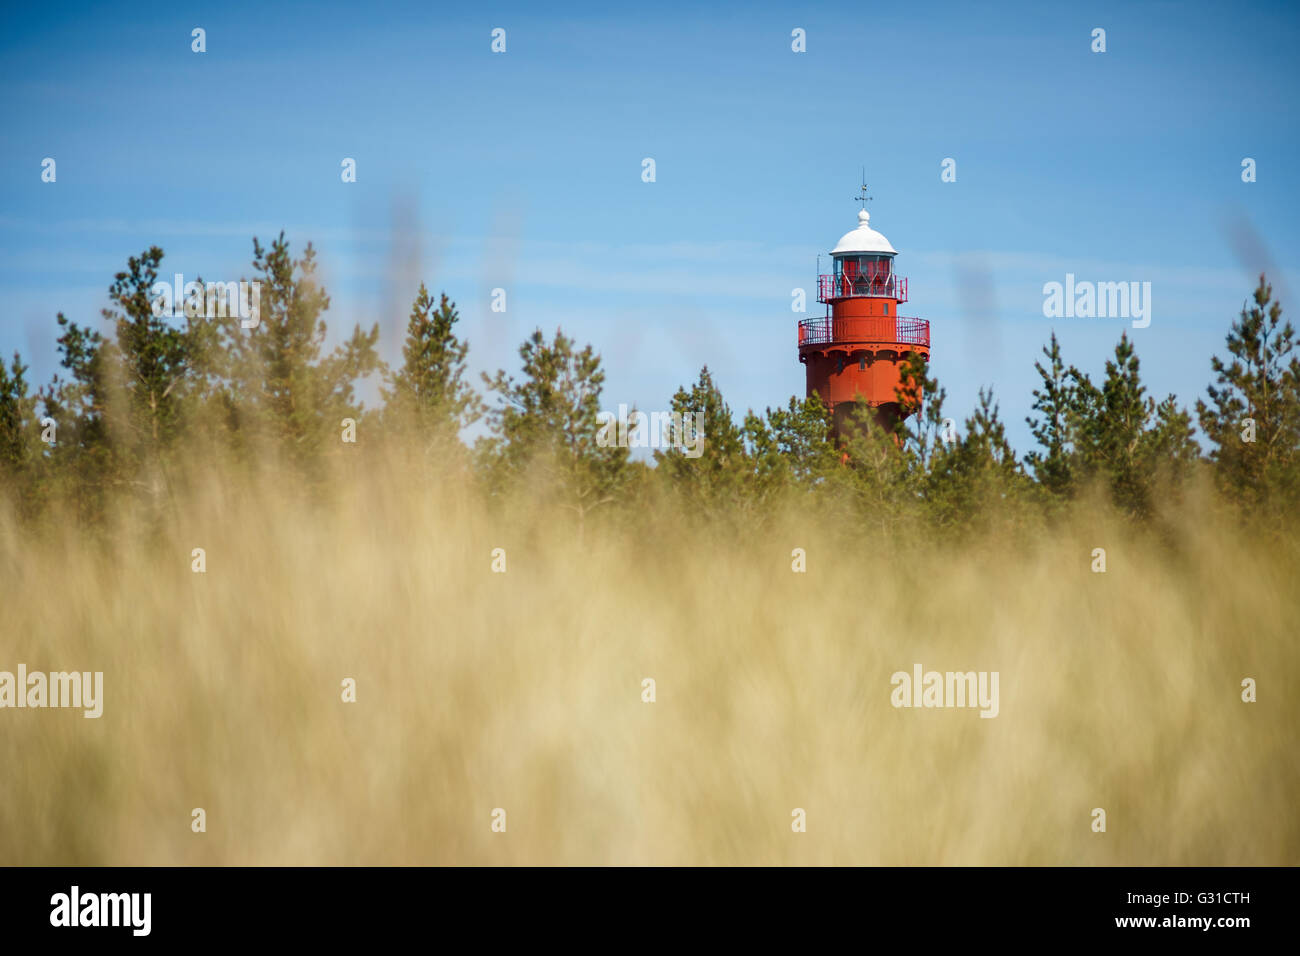 Vista sul faro Ristna attraverso il mare di erba, Hiiumaa island, Estonia Foto Stock